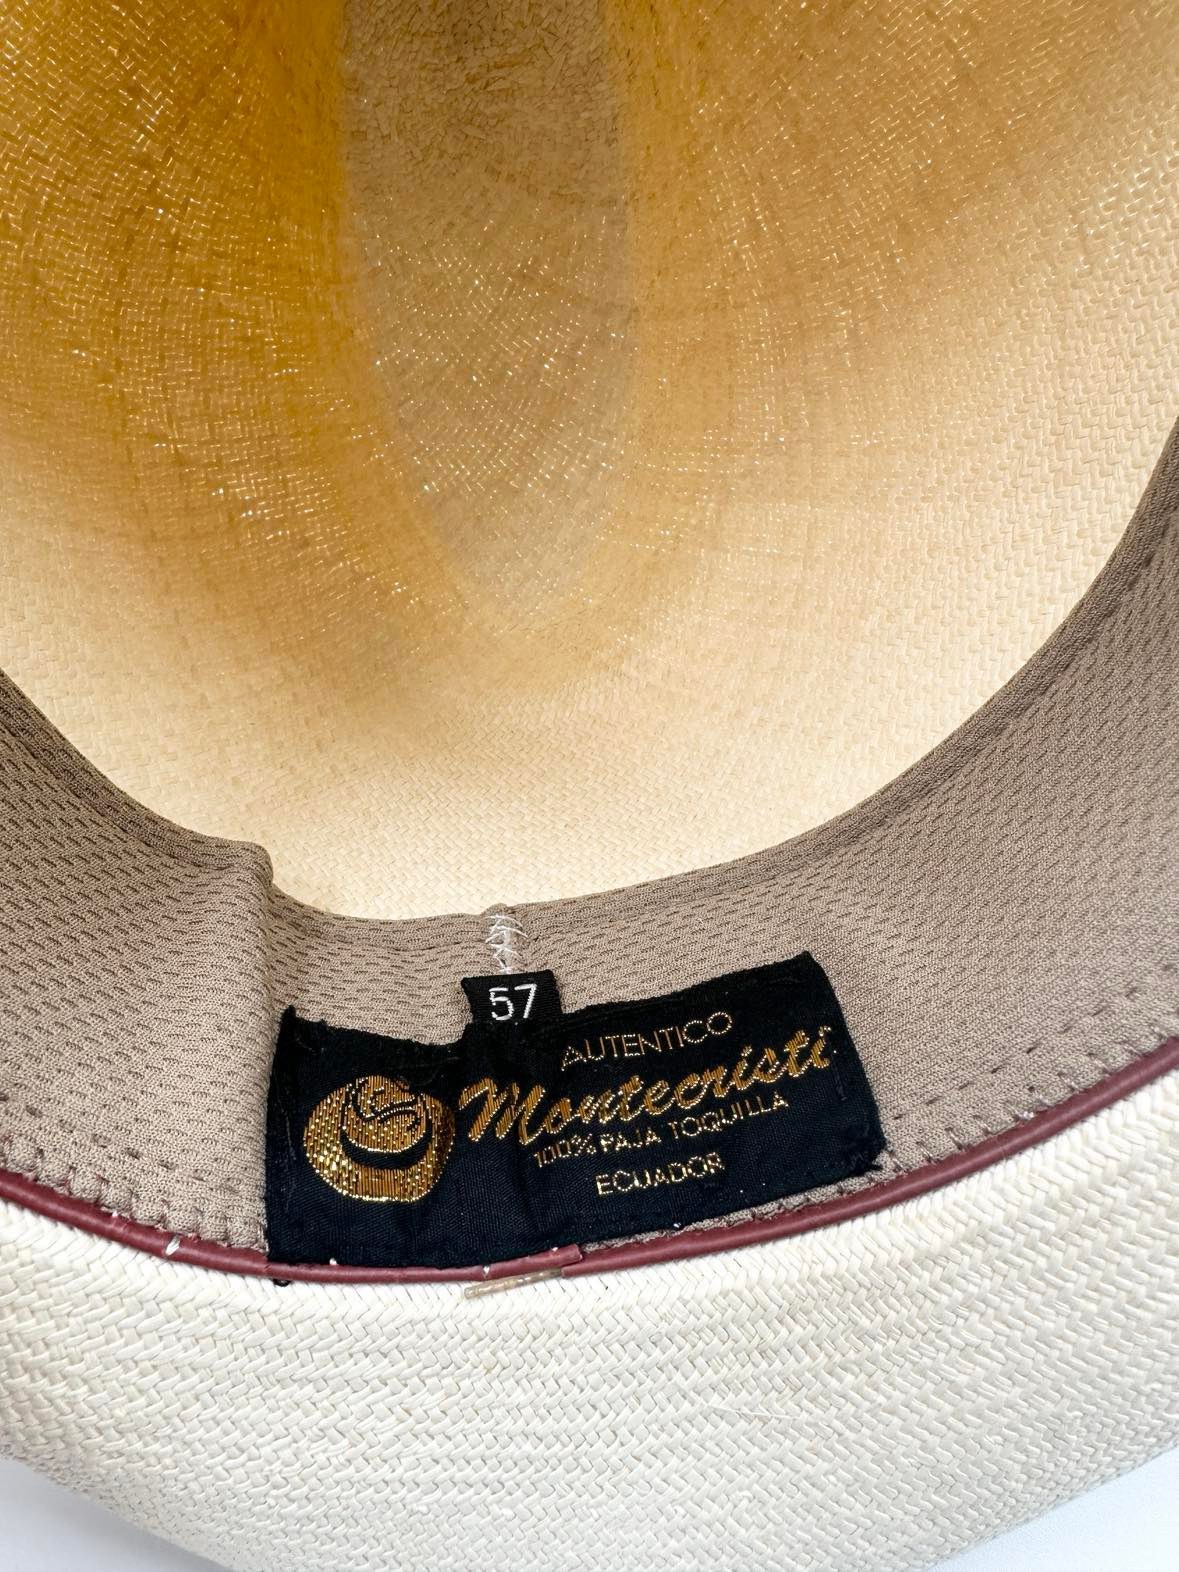 Certificering i inderforet viser Montecristi Panama hattens ægtehed.